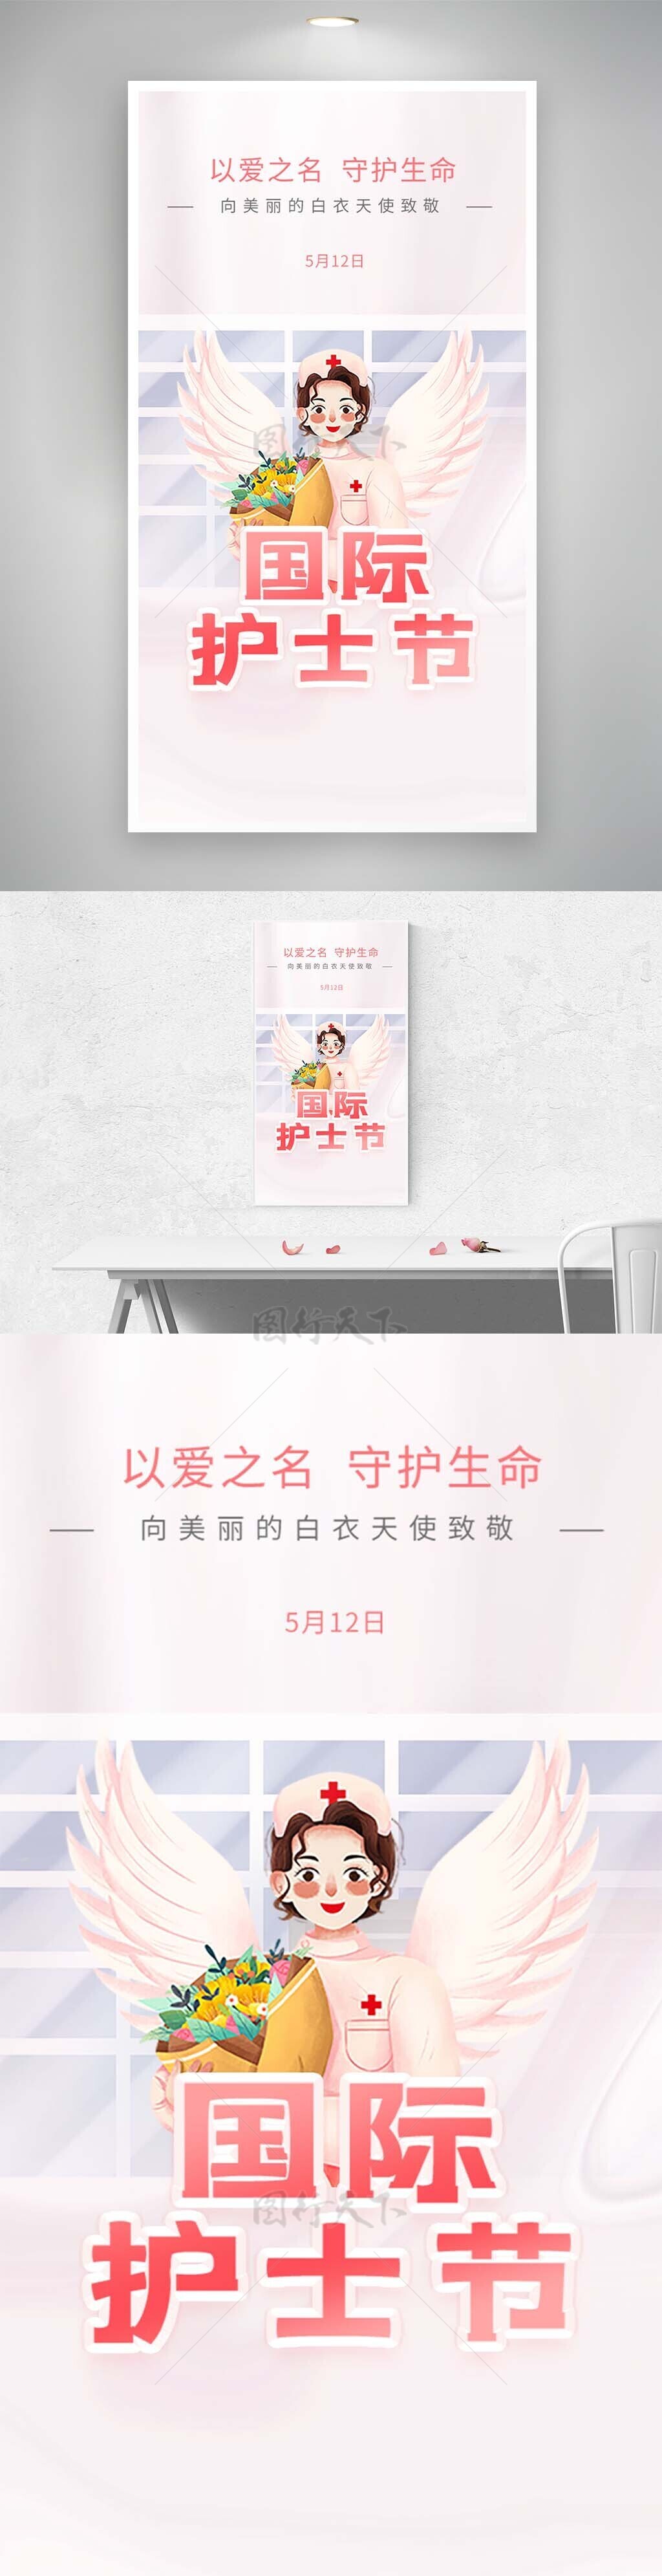 512国际护士节粉色手绘人物插画海报